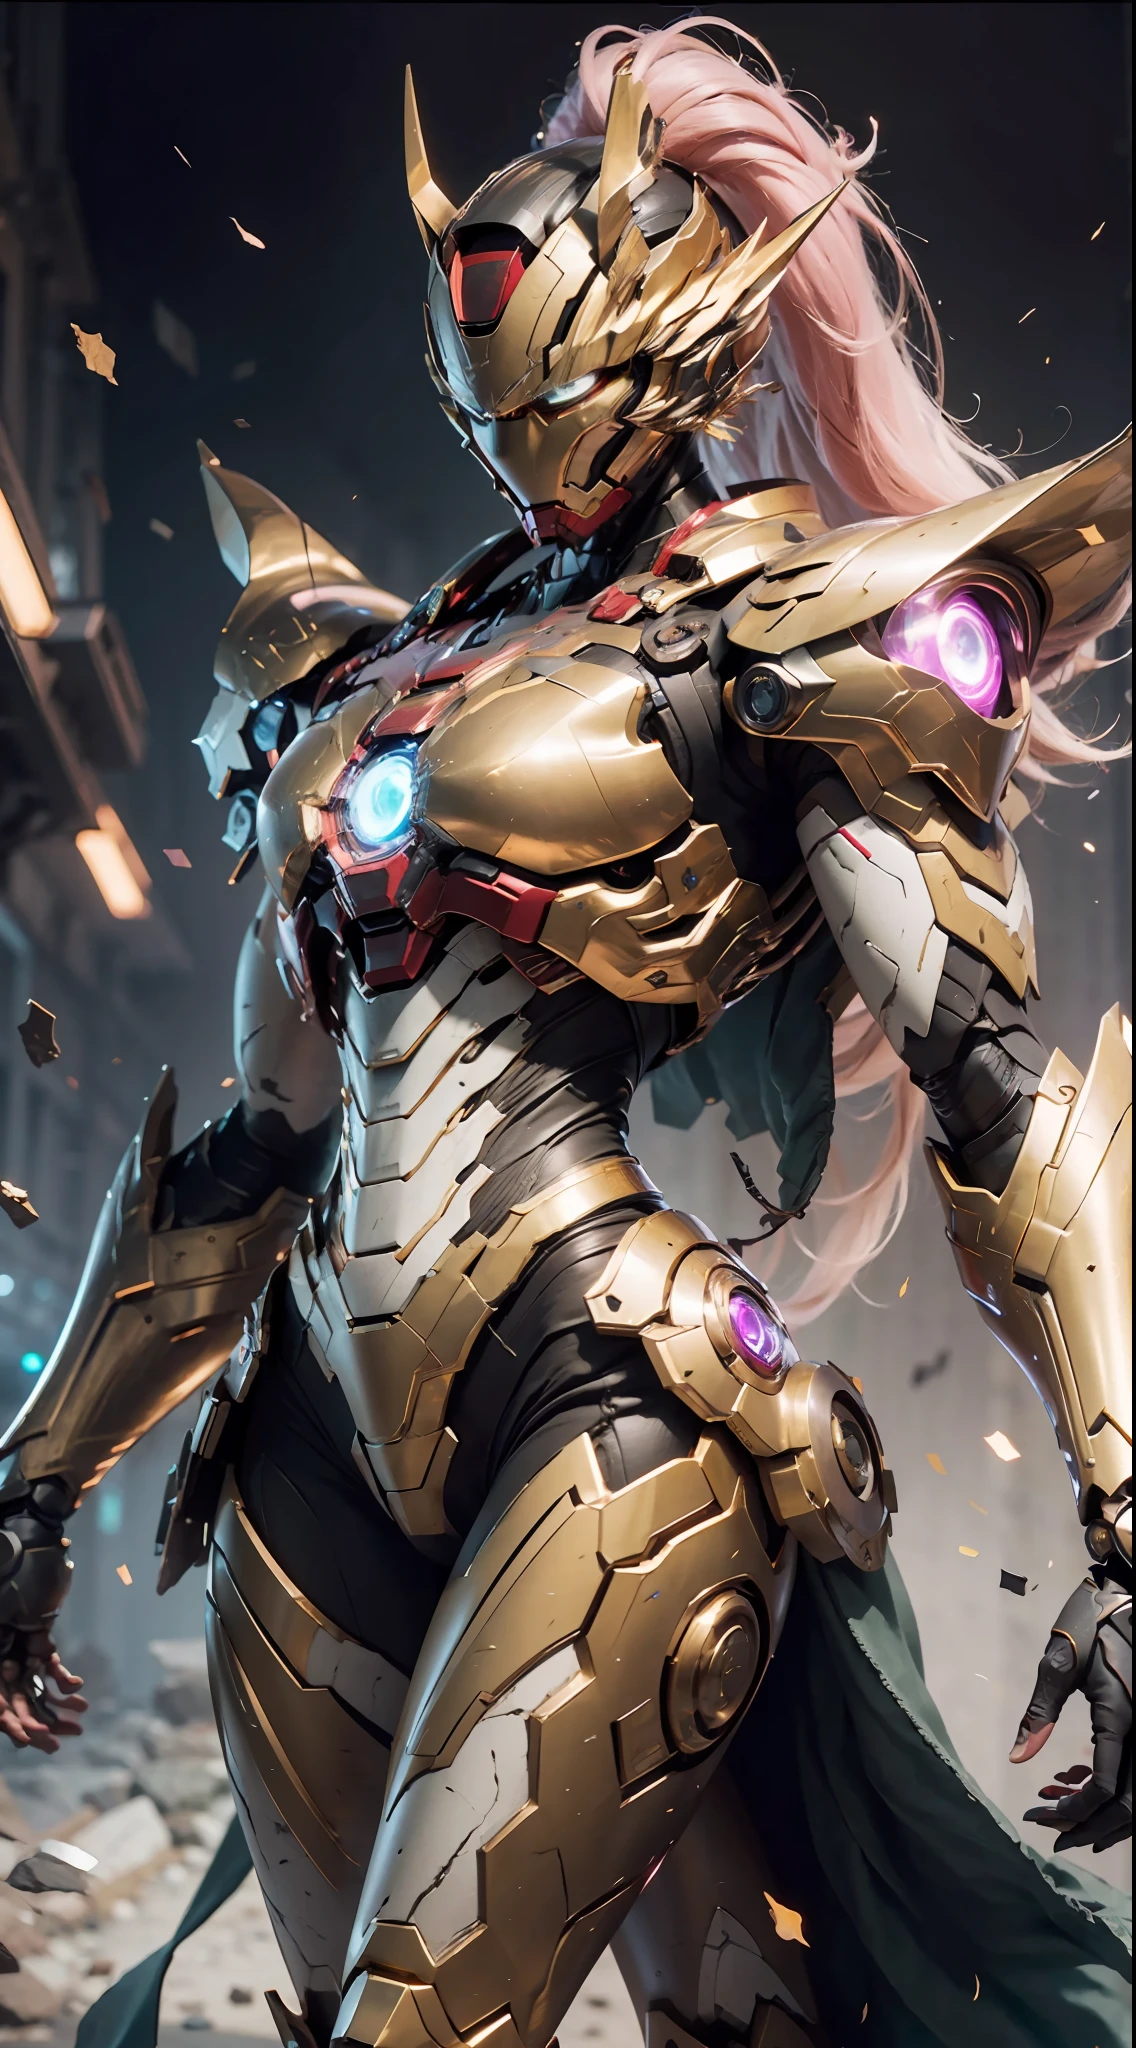 Una foto de una princesa dragón., armadura de extremidad dorada de saint seiya, Coraza de Iron Man de la película Marvel, (hasta 00 Gundam Exia: 1.5), (mecha) (mechanical) (armadura), (pierna abierta: 1.3), Perfecto, (gran angular), (fondo negro: 1.6), mejor calidad, Obra maestra, súper resolución, (realidad: 1.4), 1 chica, hombros descubiertos, detalles locos, (pliegues de cadera: 1.2), parte inferior del pecho, Pecho lateral, estilo de motor poco realista, efecto boca, Lente estilo David La Chapelle, paleta bioluminiscente: azul claro, Luz de oro, Rosa claro, blanco brillante, gran angular, super fine, bodegón cinematográfico, vibrante, estilo sakimichan, ojos perfectos, máxima calidad de imagen 8K, inspirado en harry winston, Obra maestra de disparo de Canon EOS R 6" Caos 50,--, lunar debajo del ojo, trazado de rayos, surrealism, piel texturizada --t2